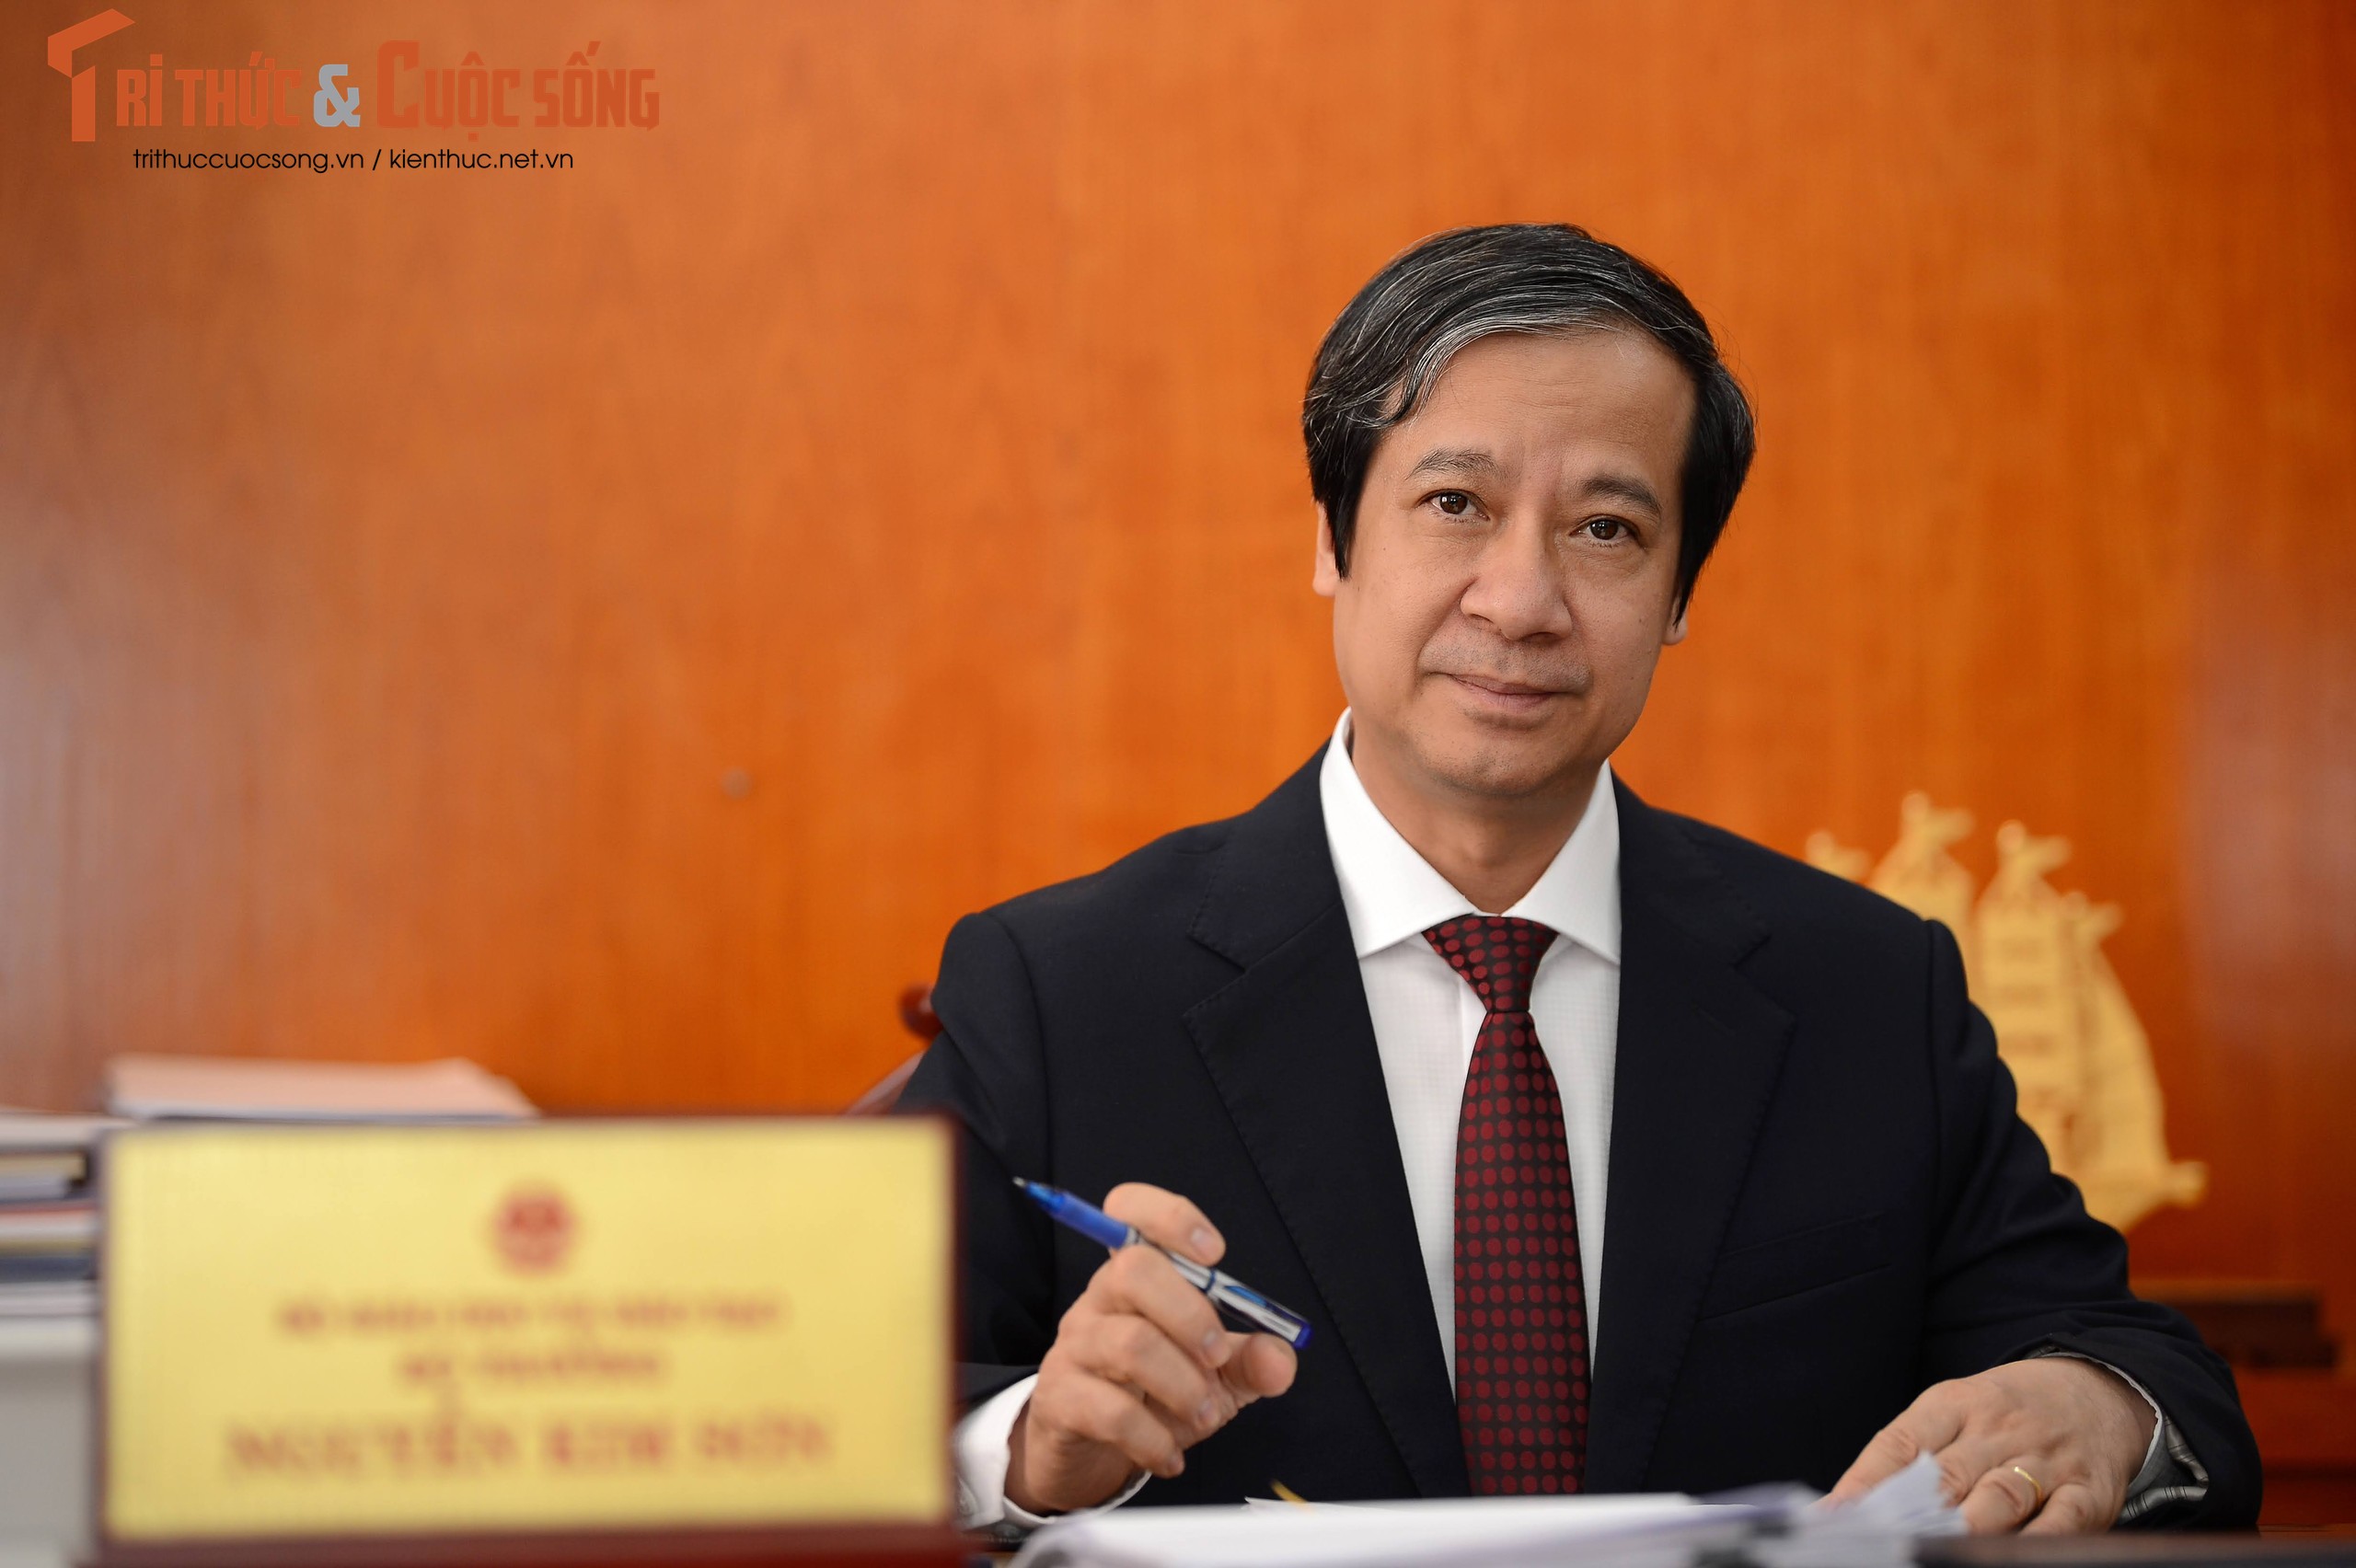 Bo truong Nguyen Kim Son: “Nam 2022 tap trung chuyen doi so trong giao duc dao tao”